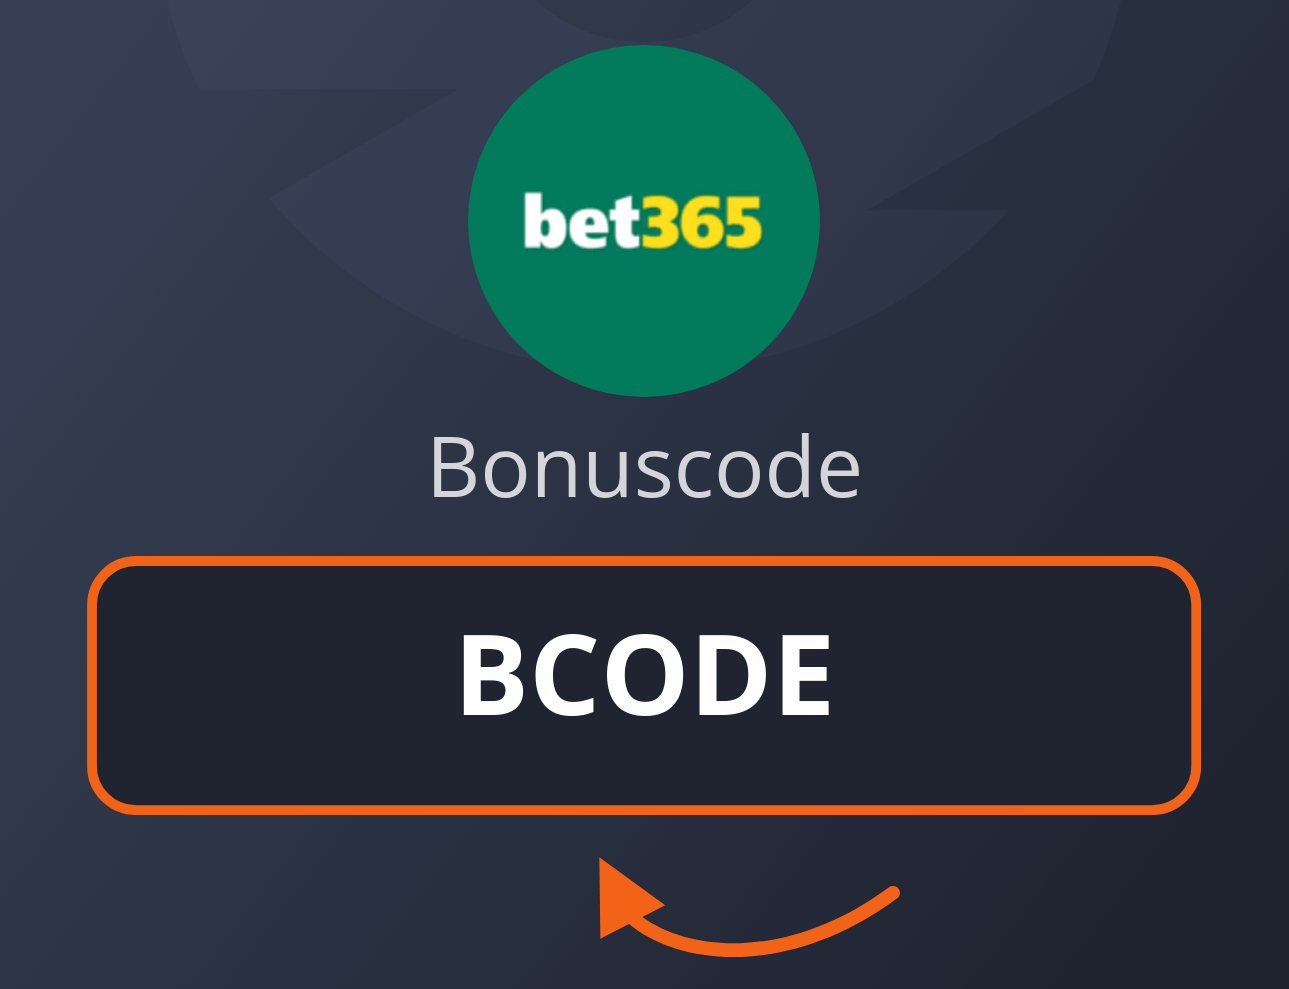 bet365 Casino Bonus Code